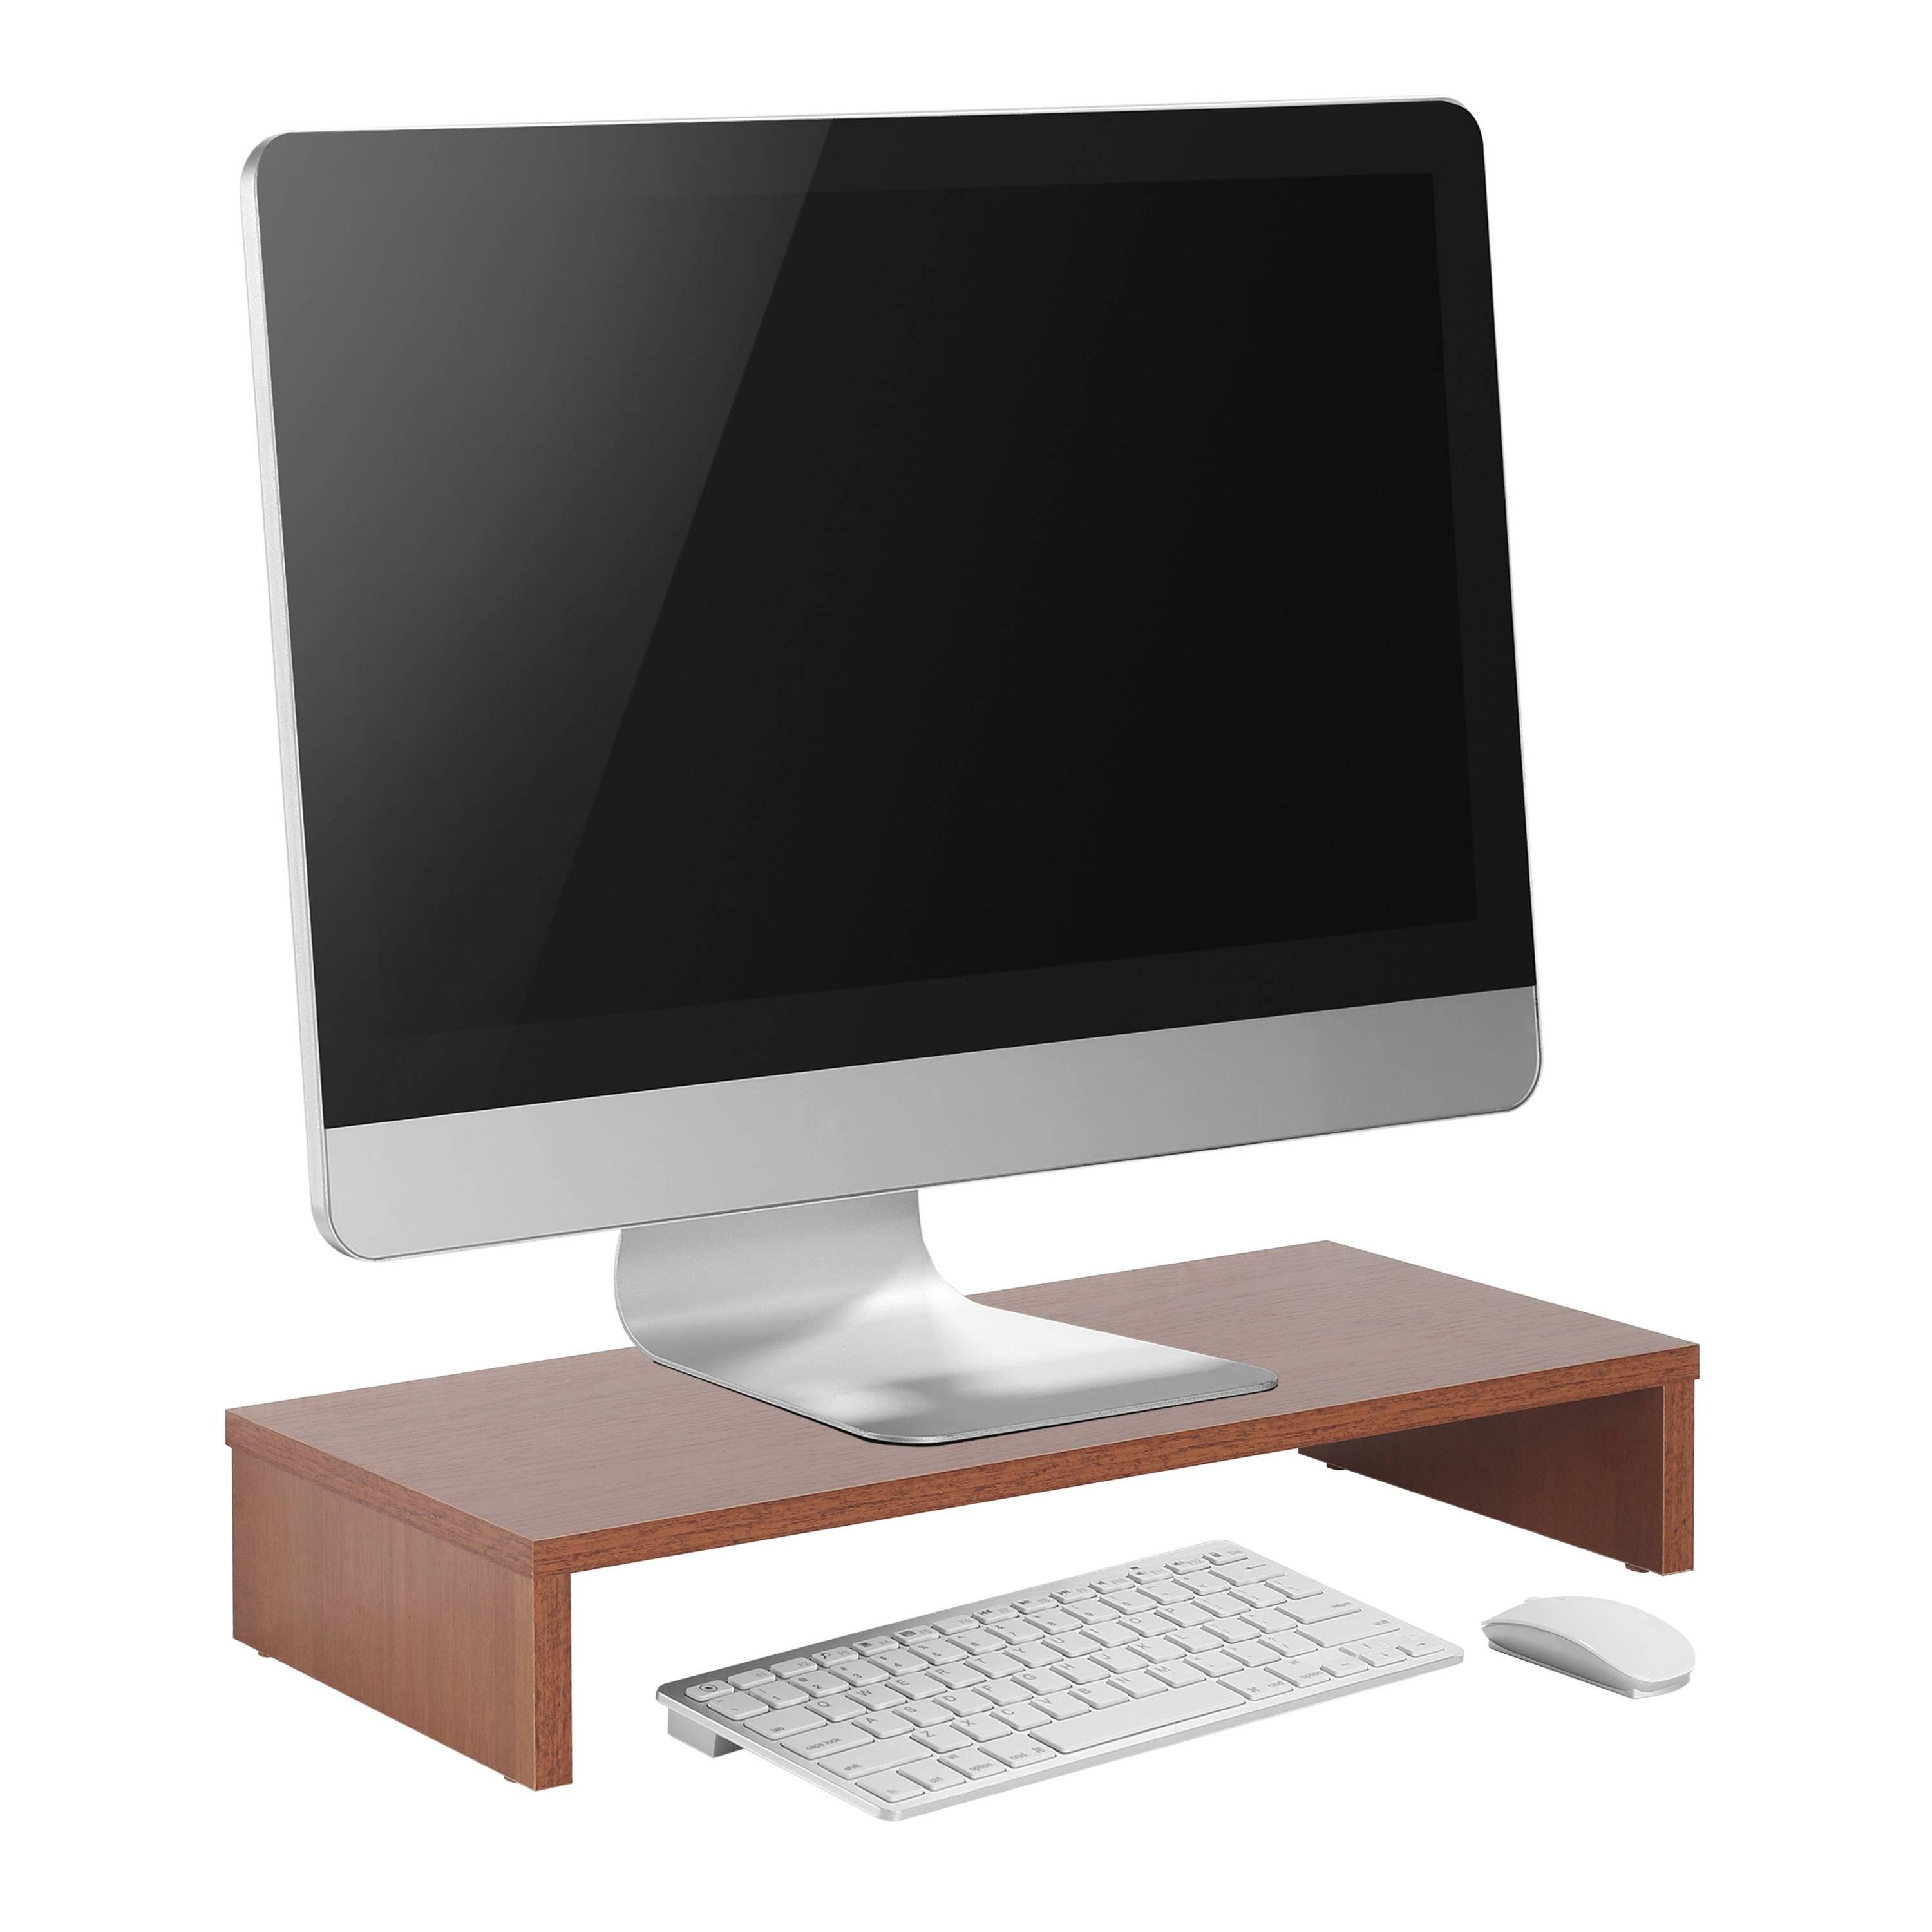 Tisch Monitorerhöhung FS0113-ER, Schreibtisch Eiche-Rustikal Bildschirm Schreibtischaufsatz Monitorständer RICOO Aufsatz